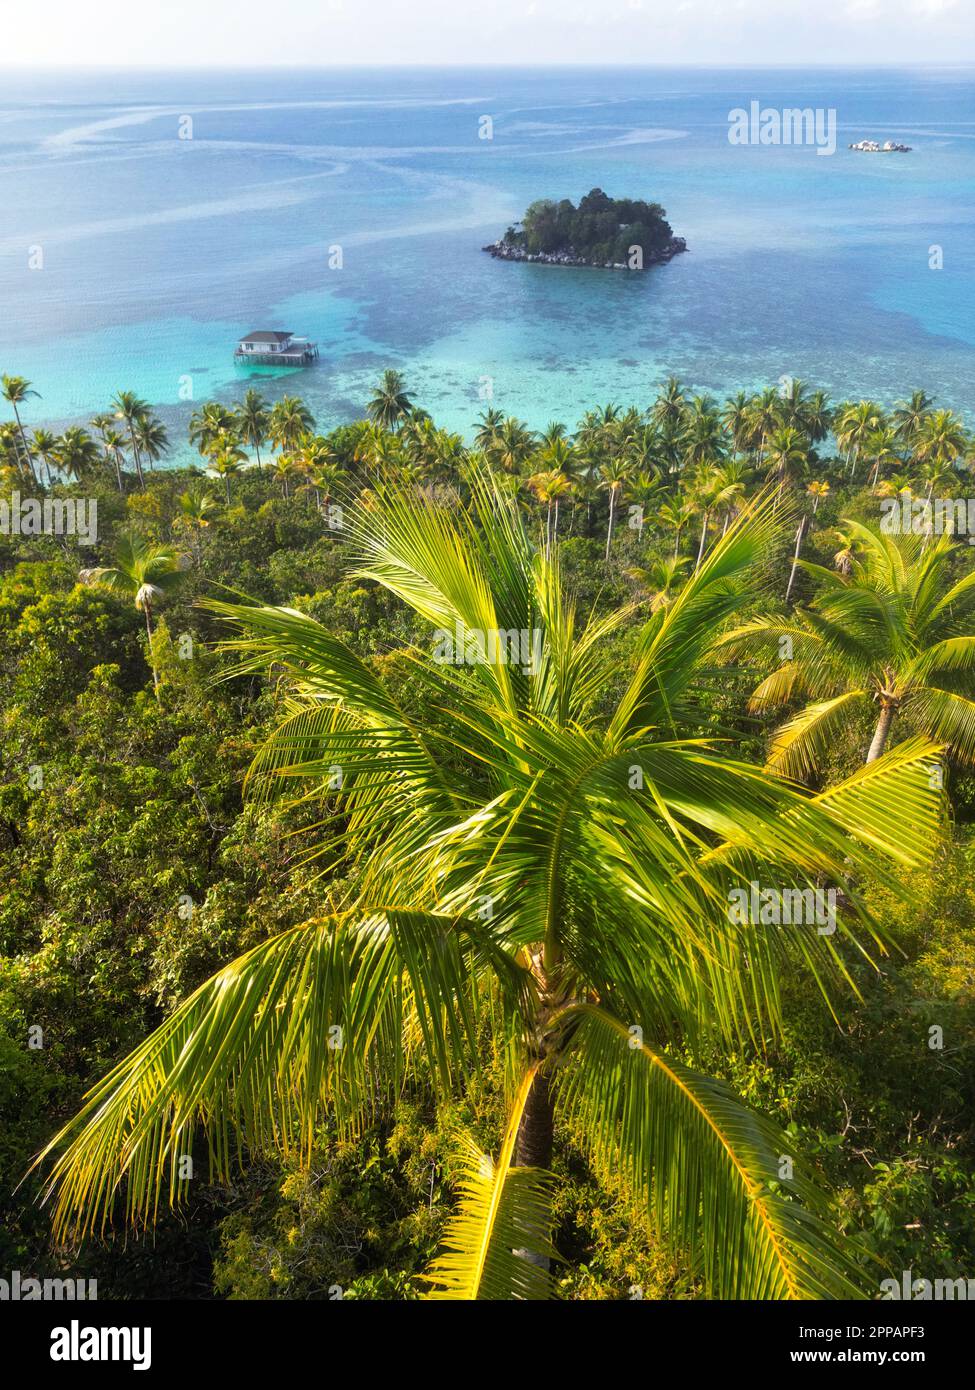 Indonesia Isole Anambas - Drone view Telaga Island linea costiera con palme Foto Stock